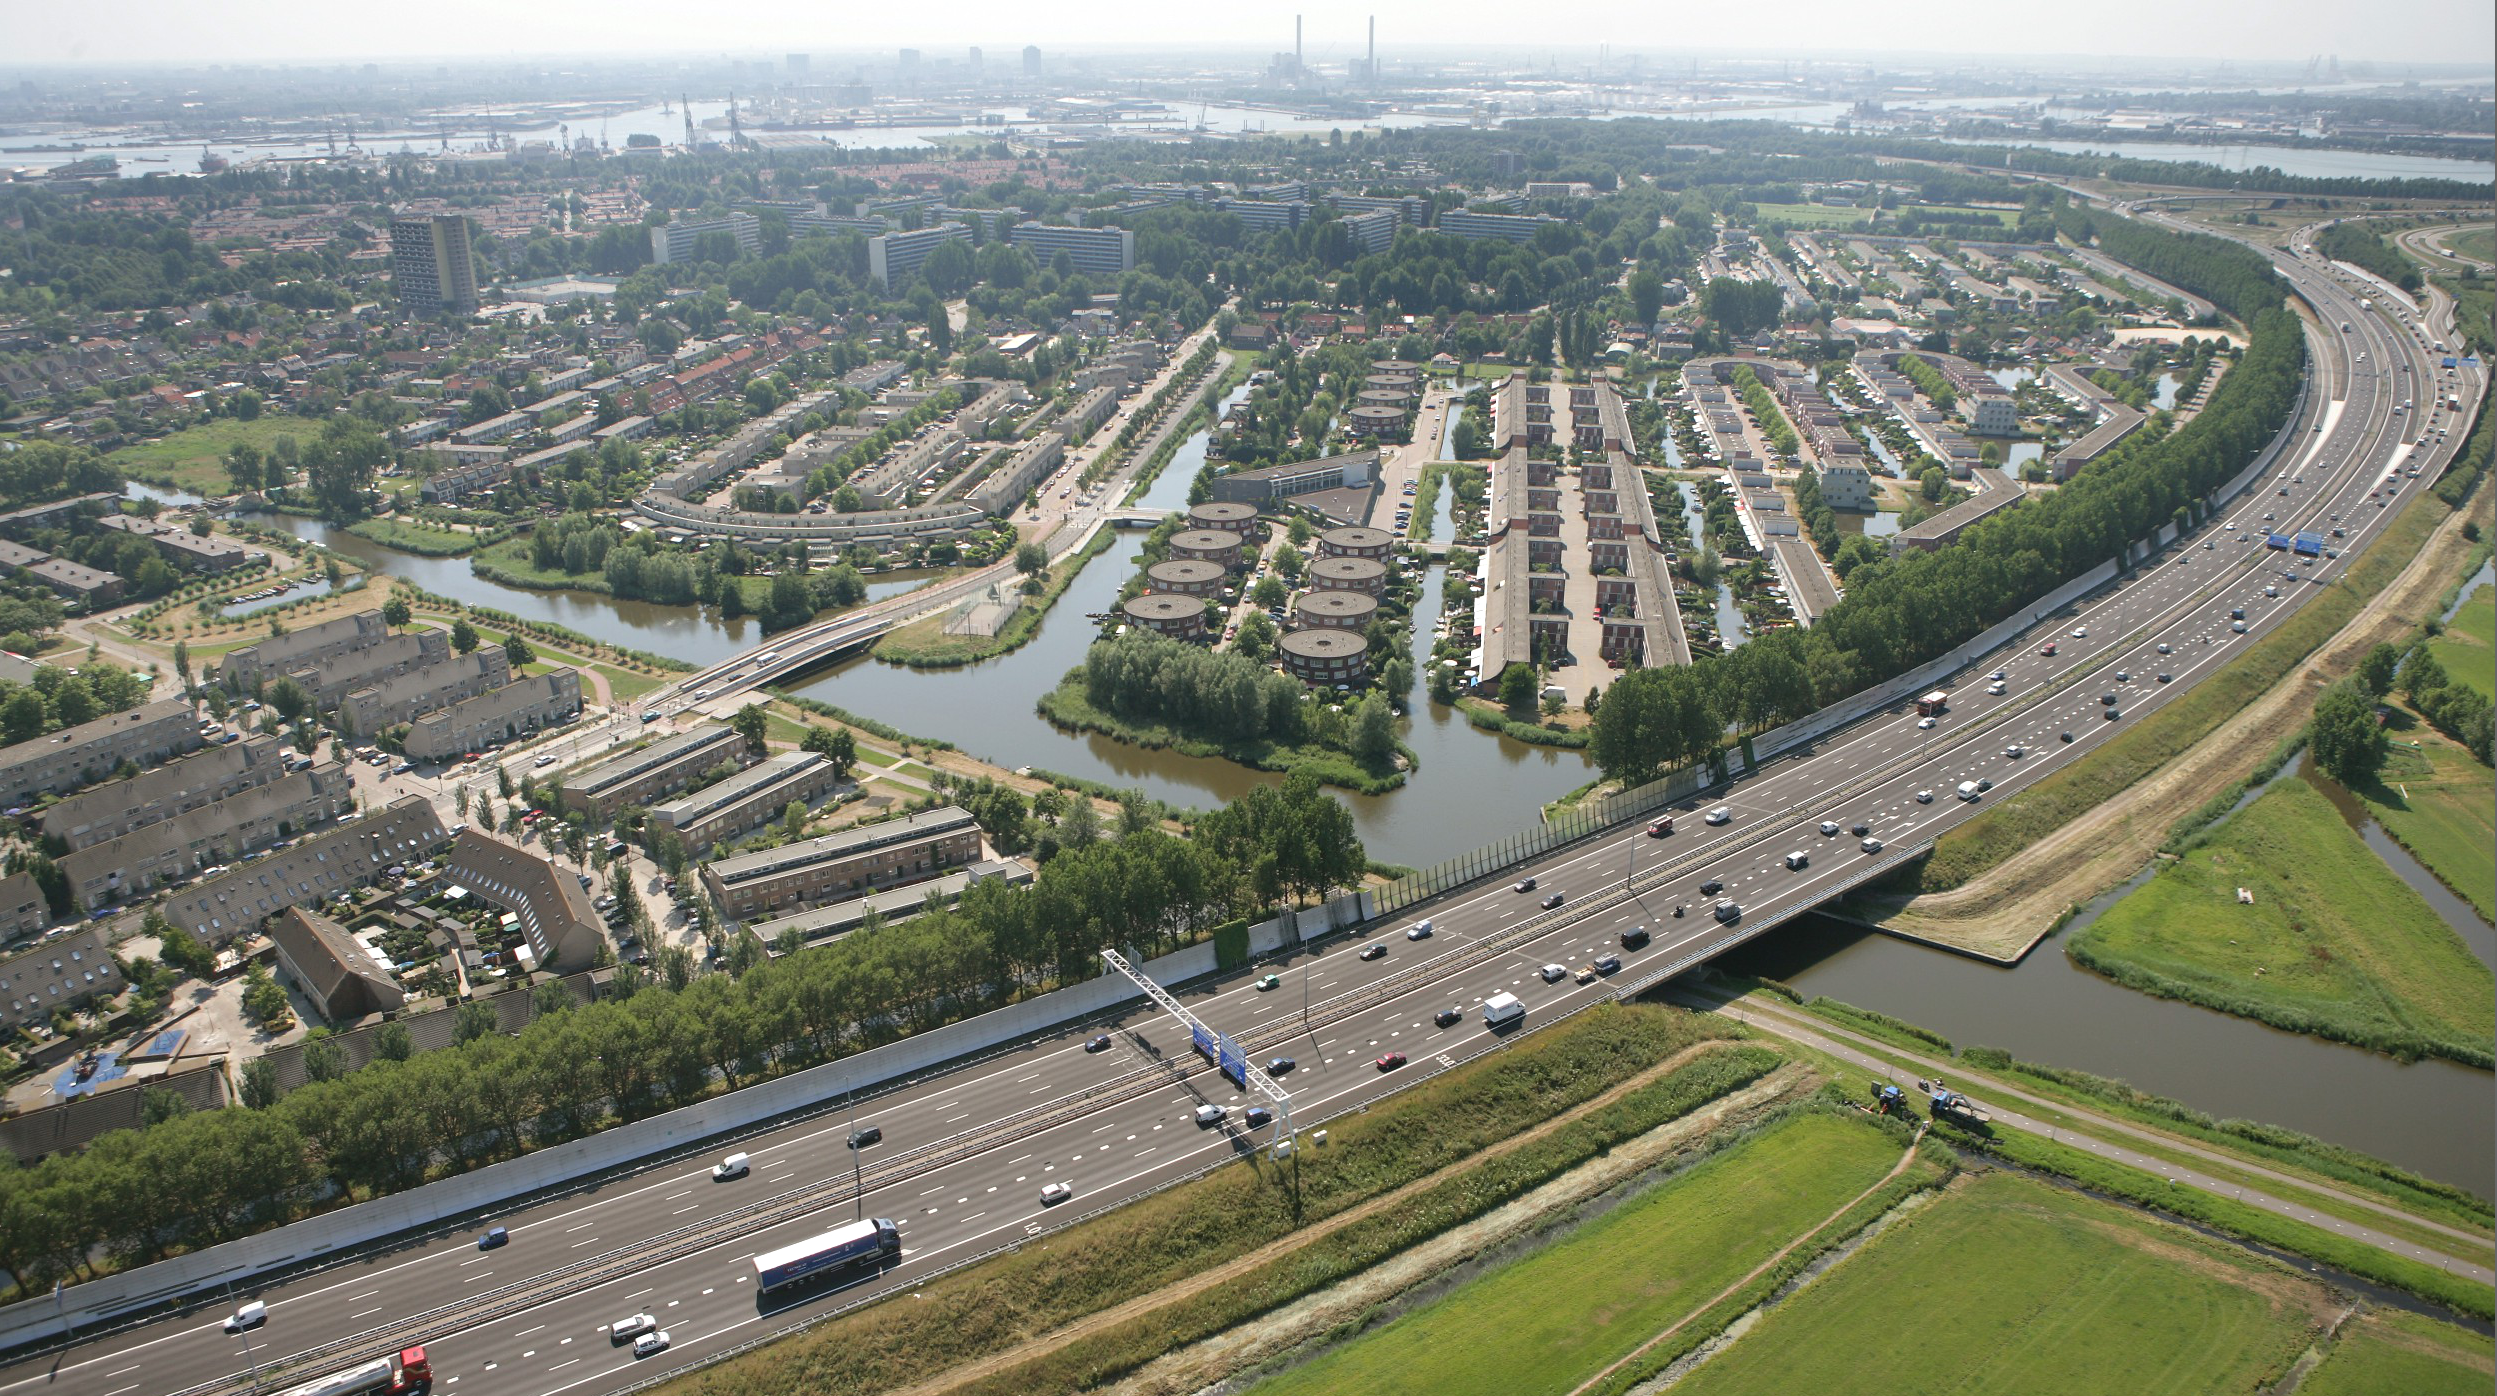 Anekdote gijzelaar af hebben FA Workshop: Amsterdam's Ring Road - Failed Architecture